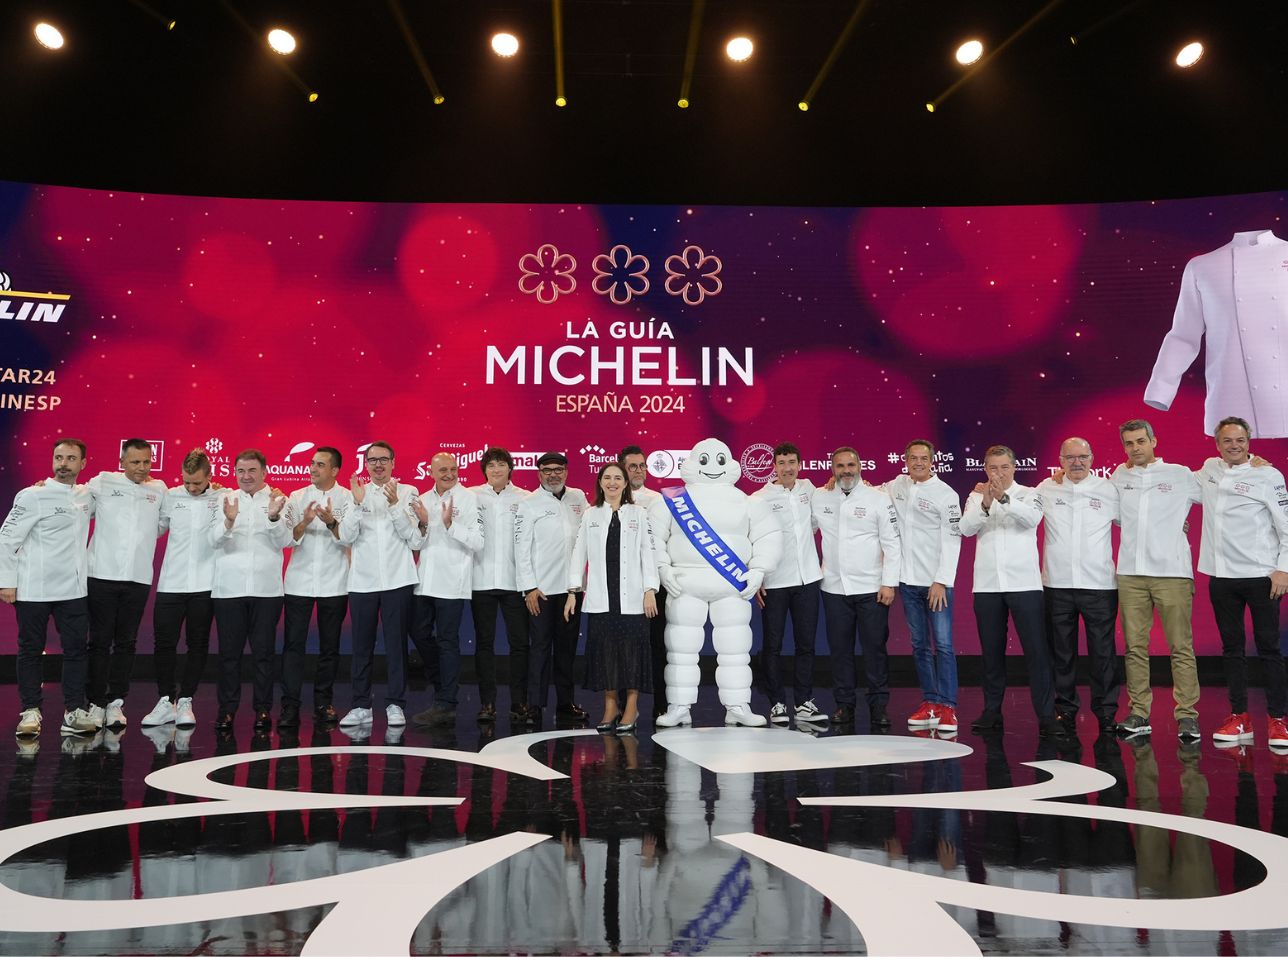 Disfrutar (Barcelona) y Noor (Córdoba) consiguen tres estrellas Michelin